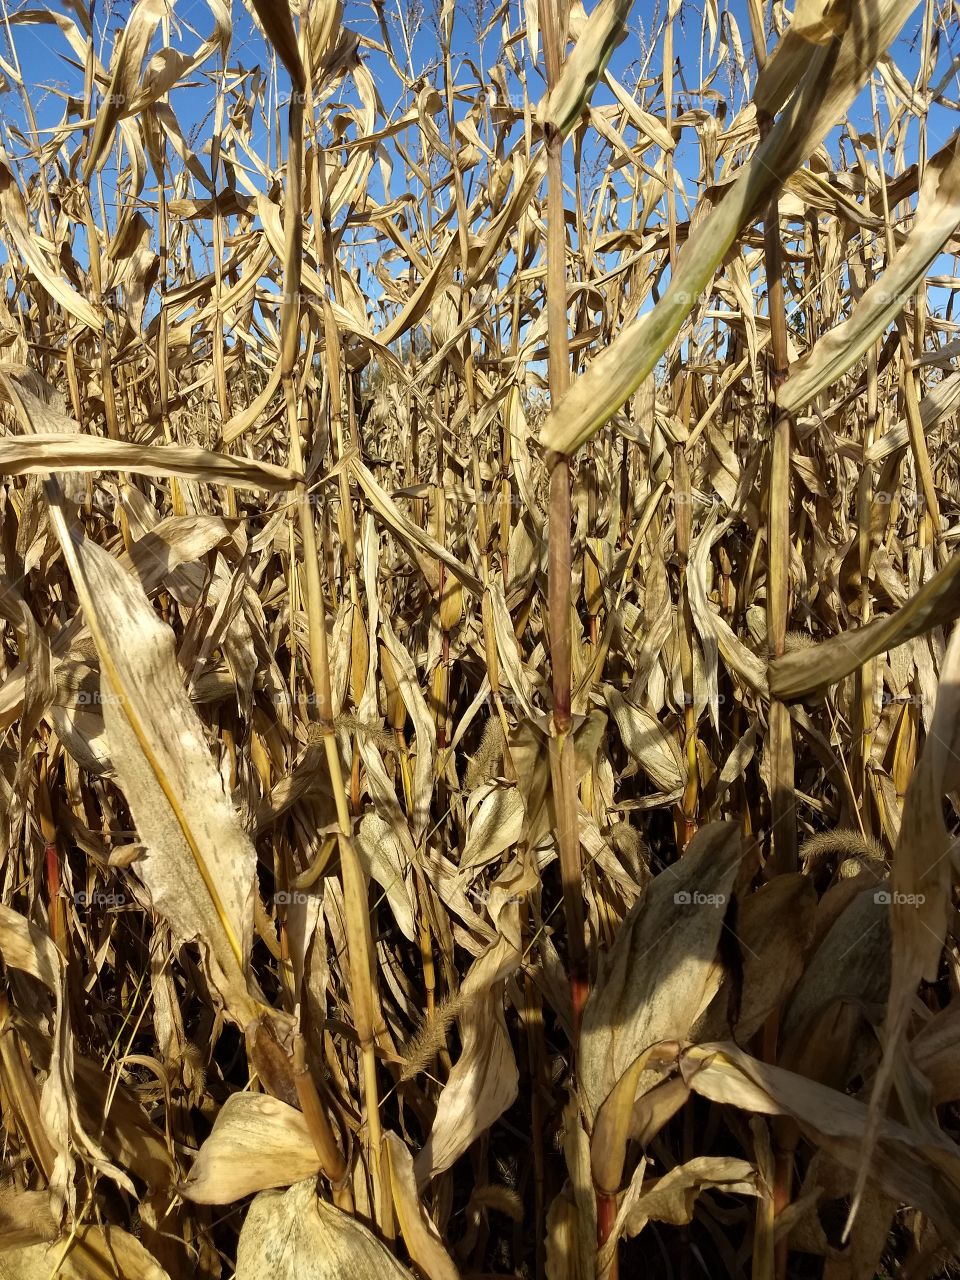 fall field corn